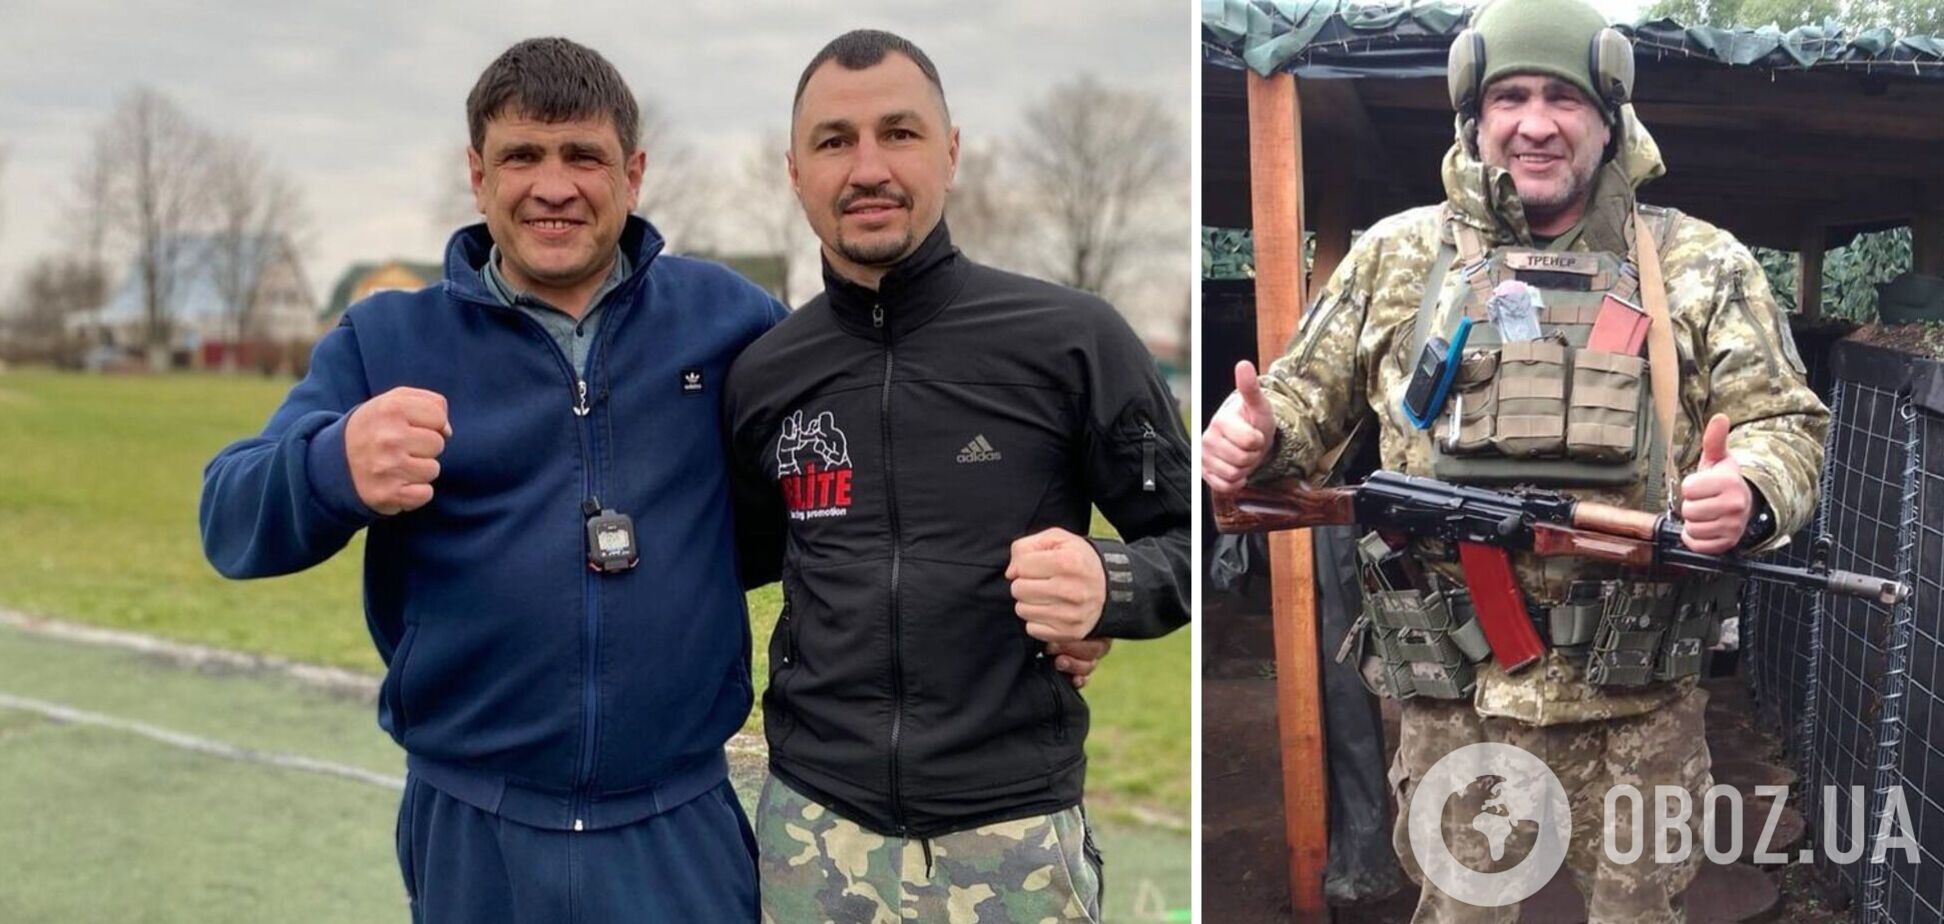 'Три недели реанимации': первый тренер украинского чемпиона мира по боксу получил тяжелое ранение и боролся за жизнь